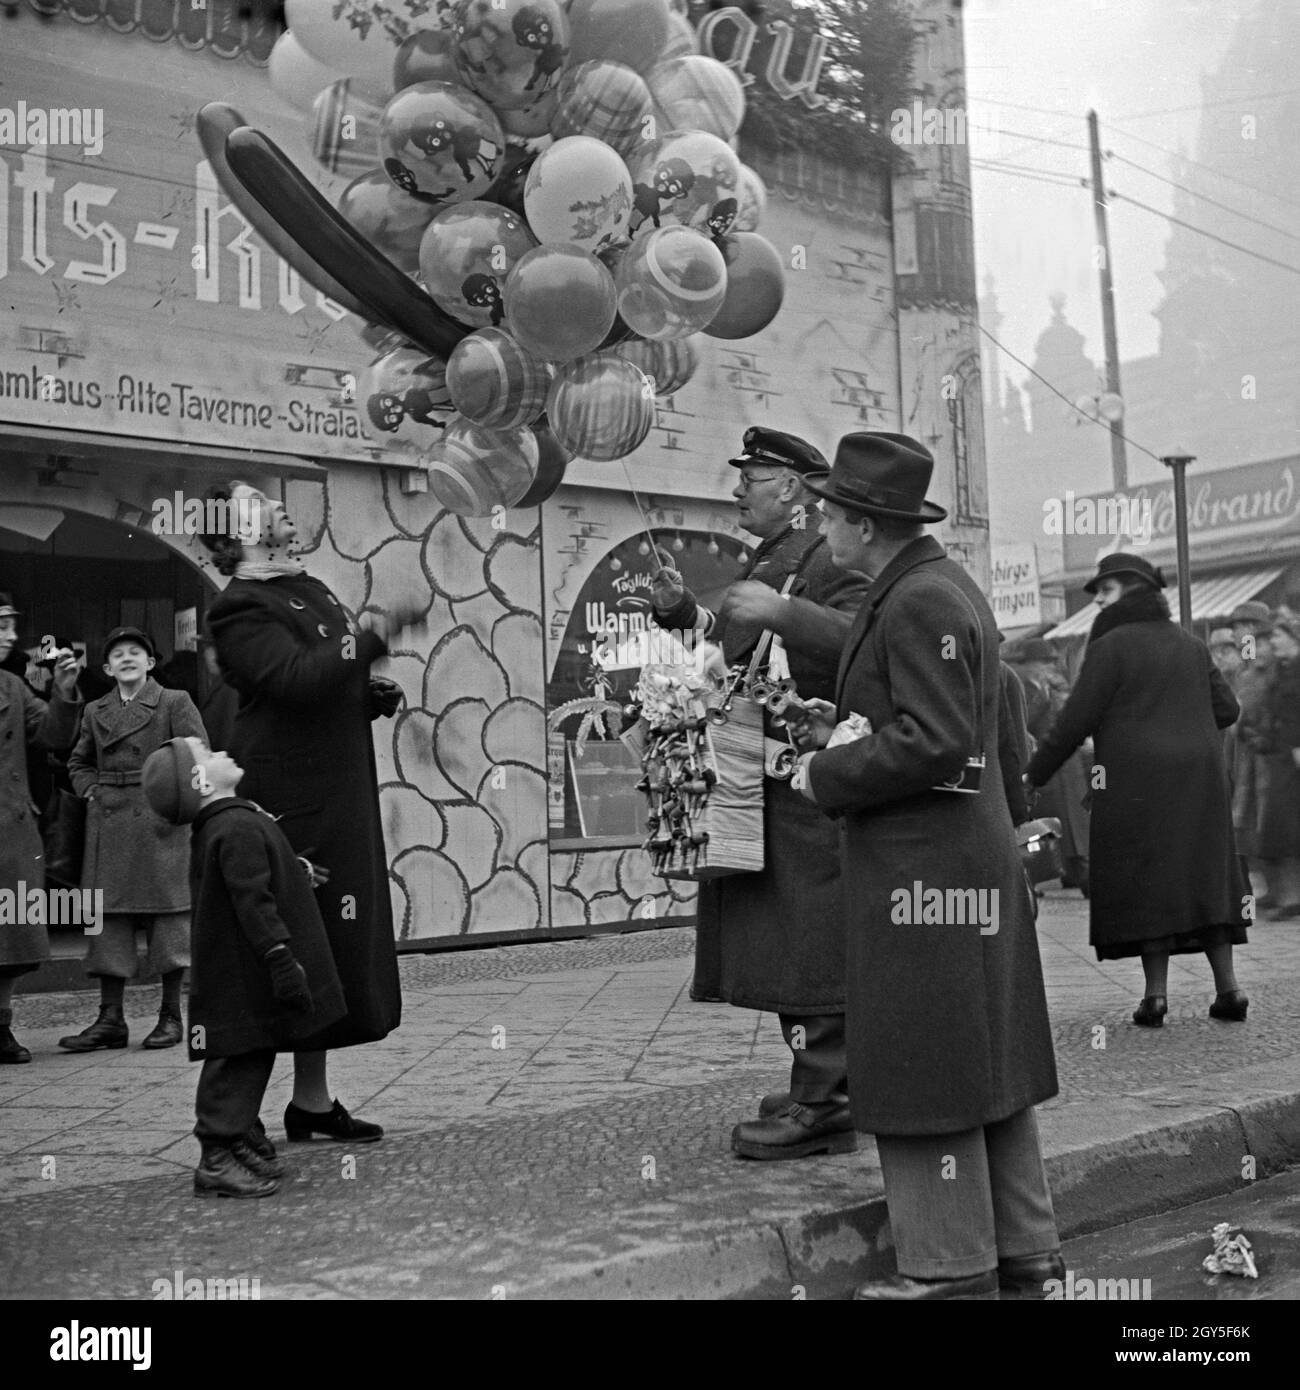 Ein kleiner Junge steht mit circuizione Mutter beim Luftballonverkäufer am Eingang des Weihnachtsmarkt, Deutschland 1930er Jahre. Un bambino con sua madre in piedi da un palloncino venditore all'entrata del mercato di natale, Germania 1930s. Foto Stock